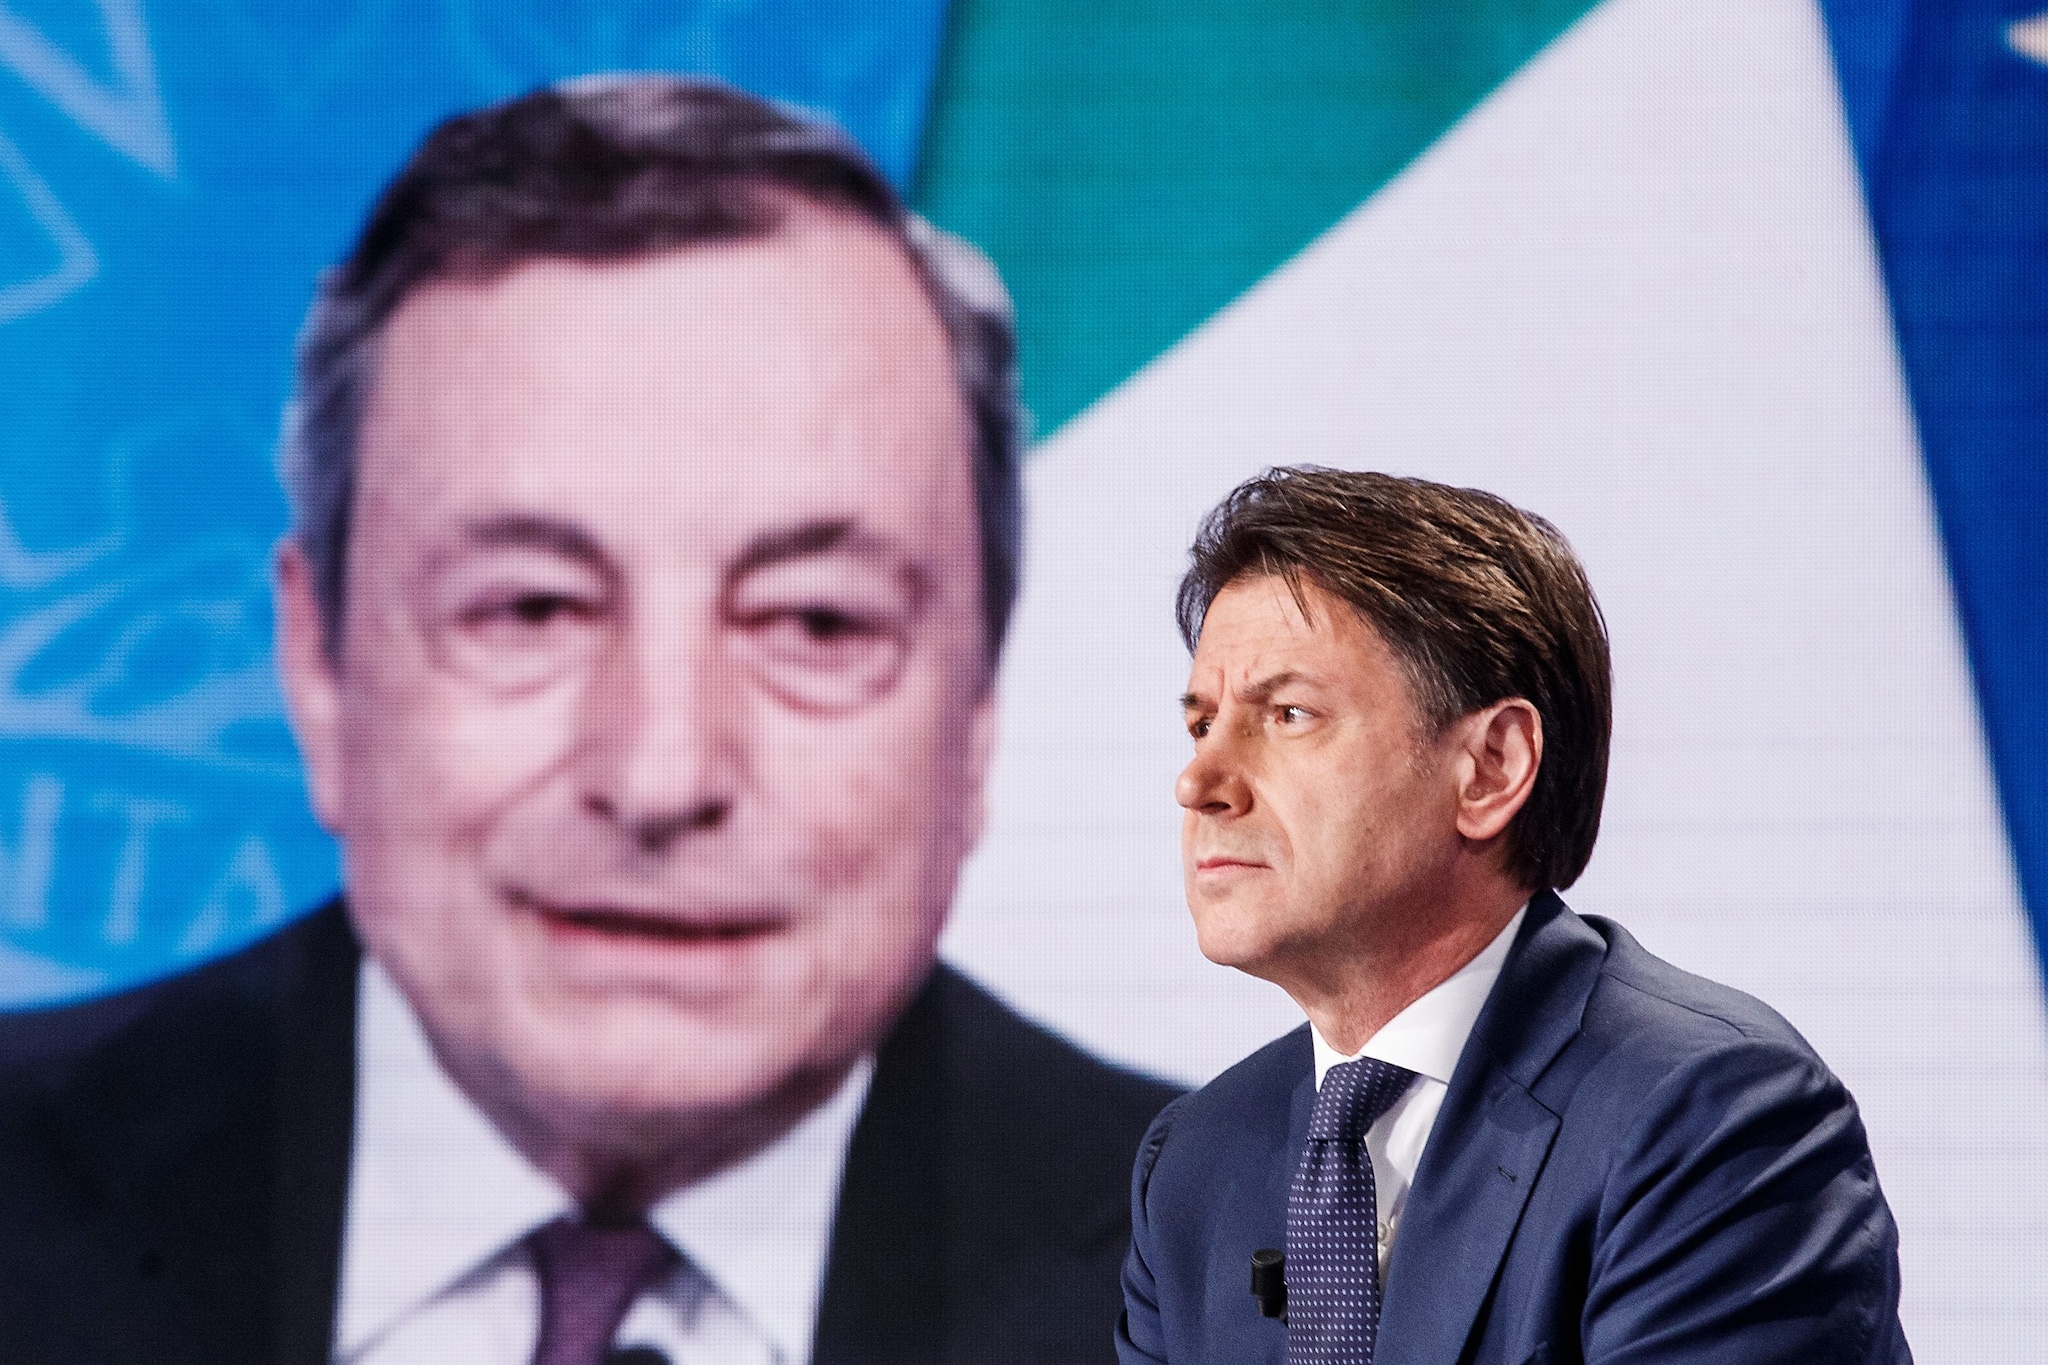 Governo, vertice Draghi - Conte, parla l'ex premier: "Restiamo, ma serve una discontinuità"